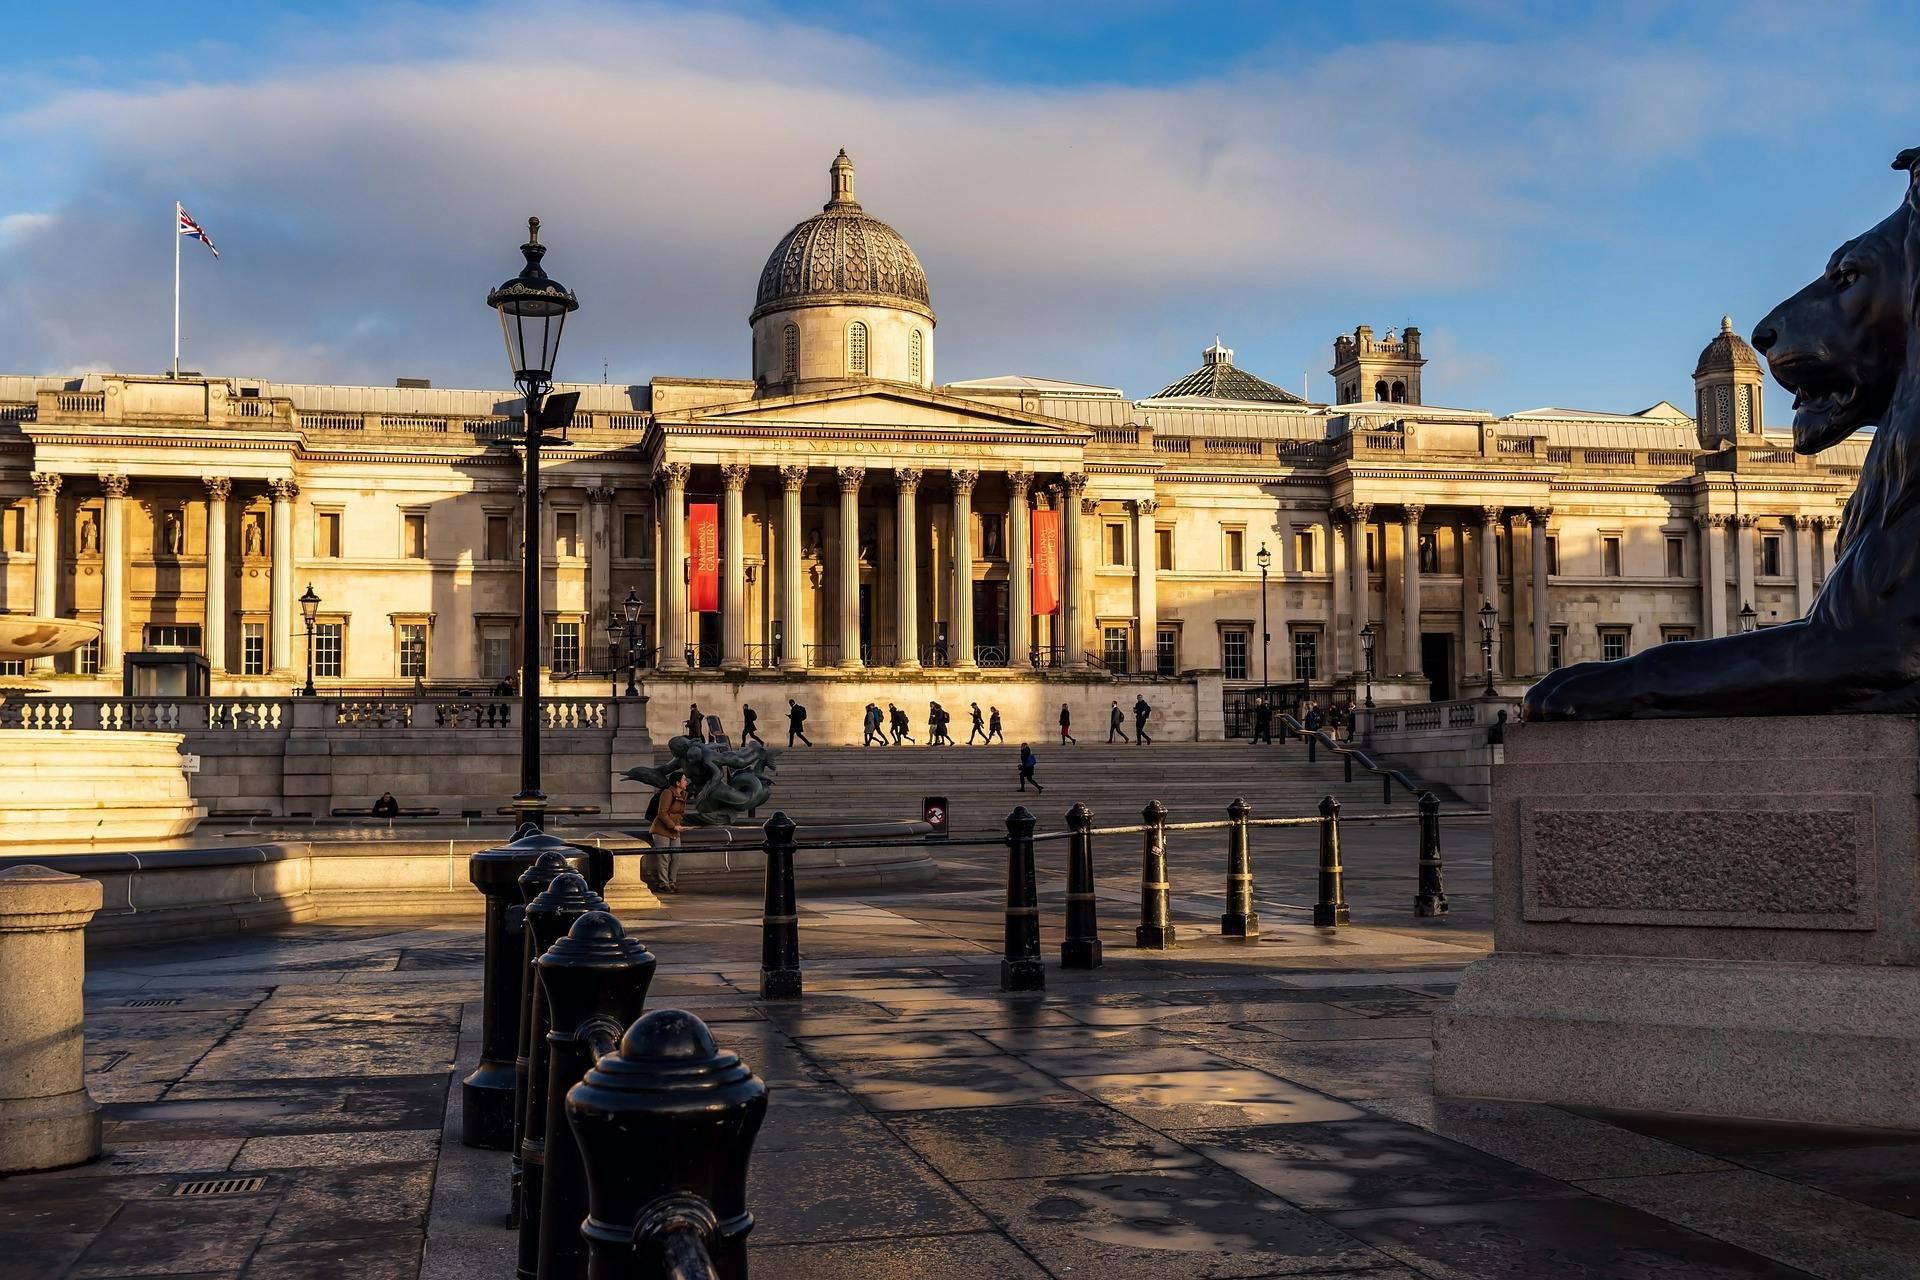 Esperienza autoguidata del mistero dell'omicidio a Londra Trafalgar Square